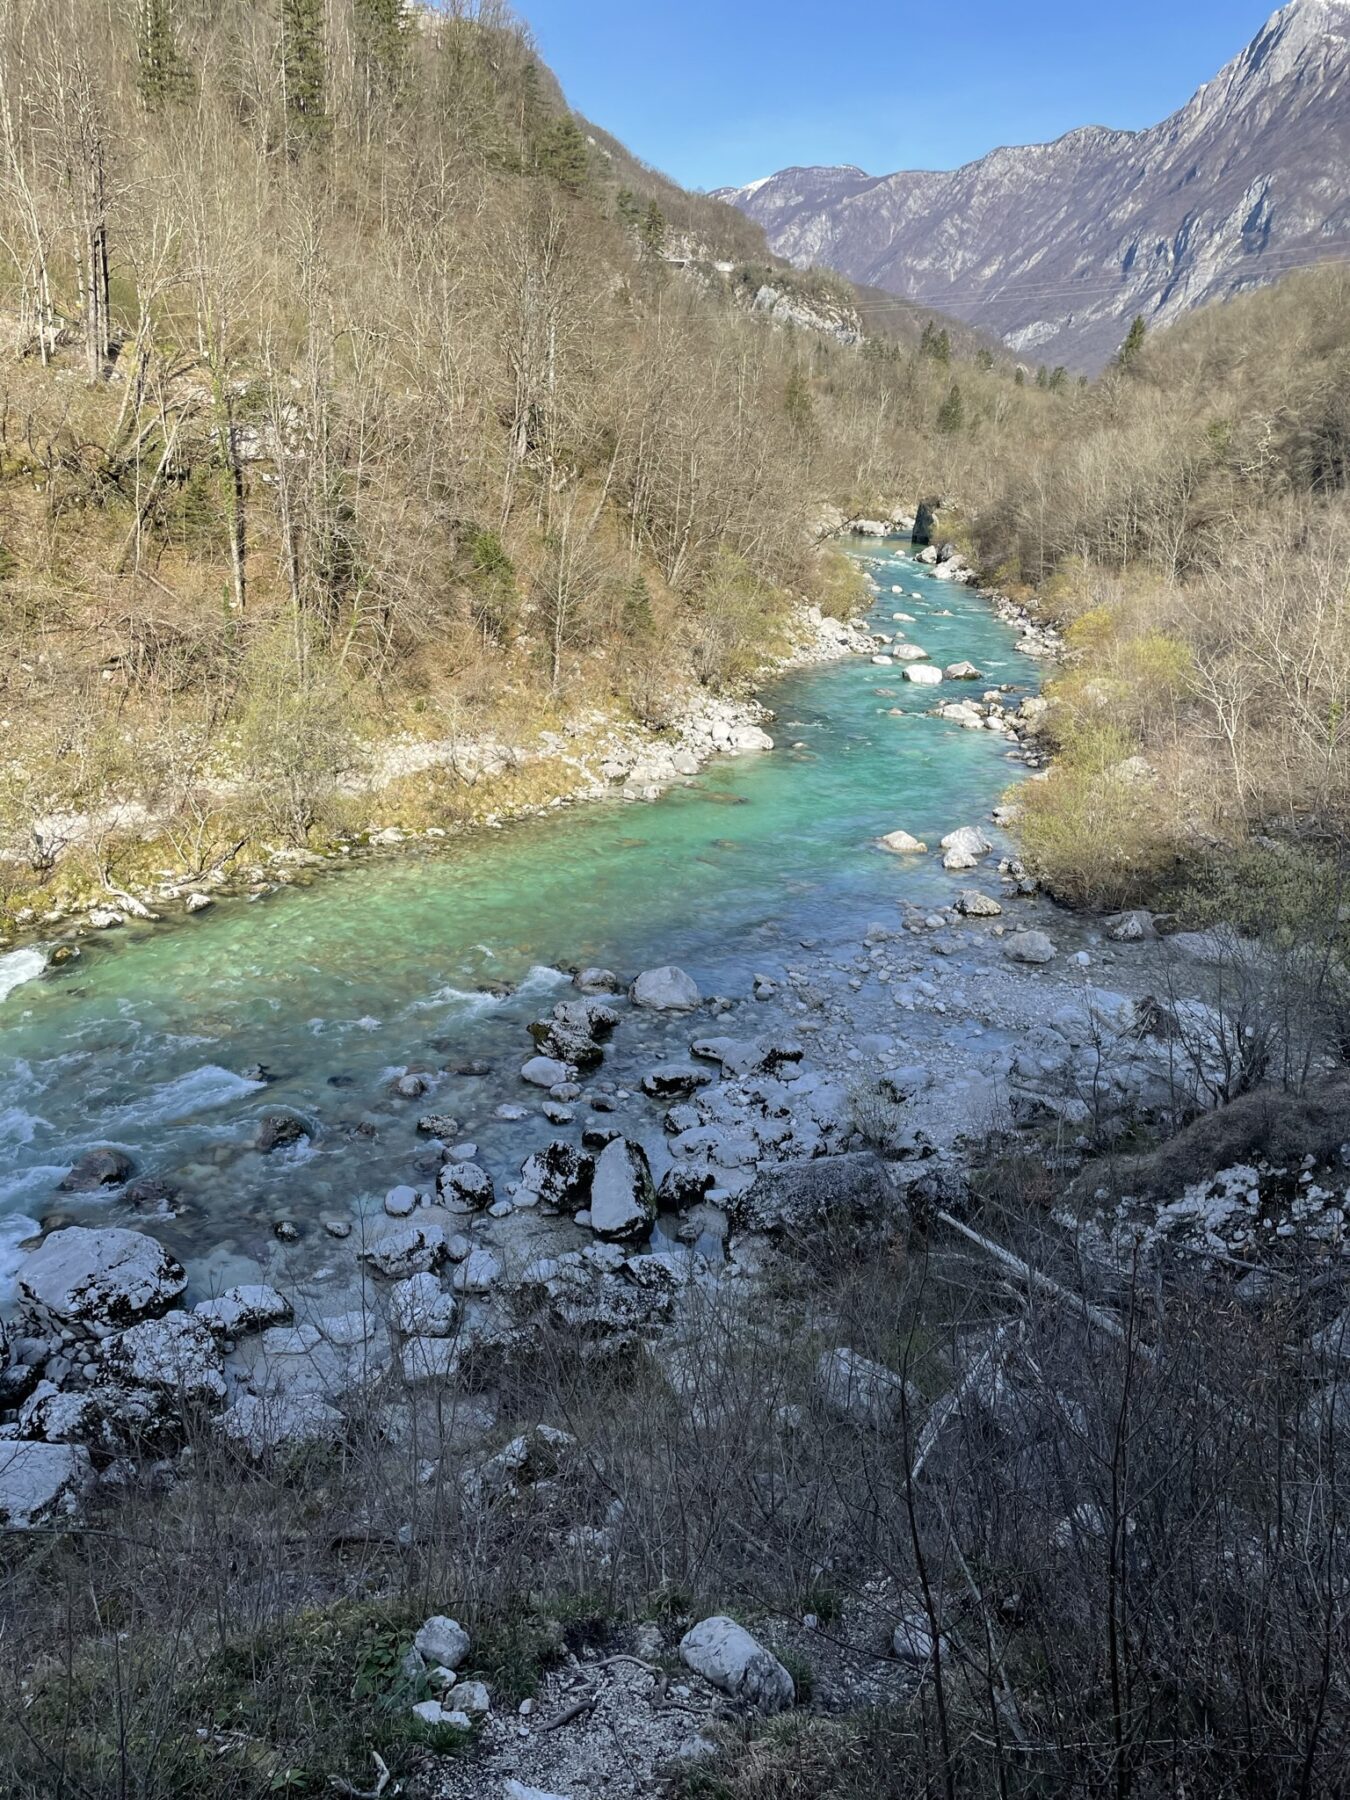 Slovenië is een fantastische outdoor bestemming. Met mooie rivieren 